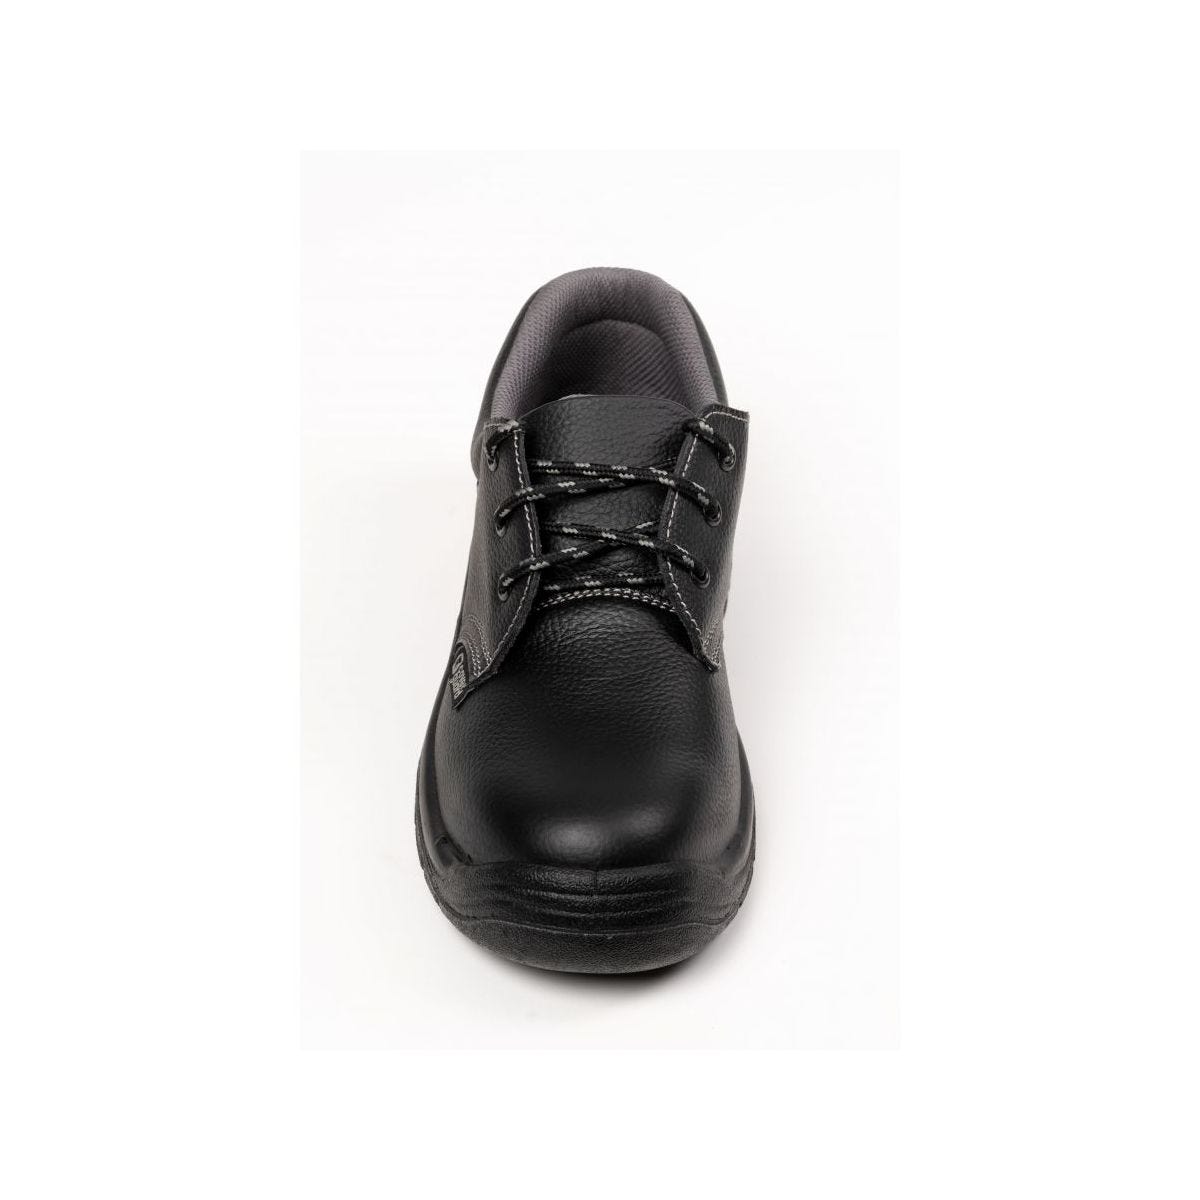 Chaussures de sécurité basses AGATE II S3 Noir - Coverguard - Taille 37 3